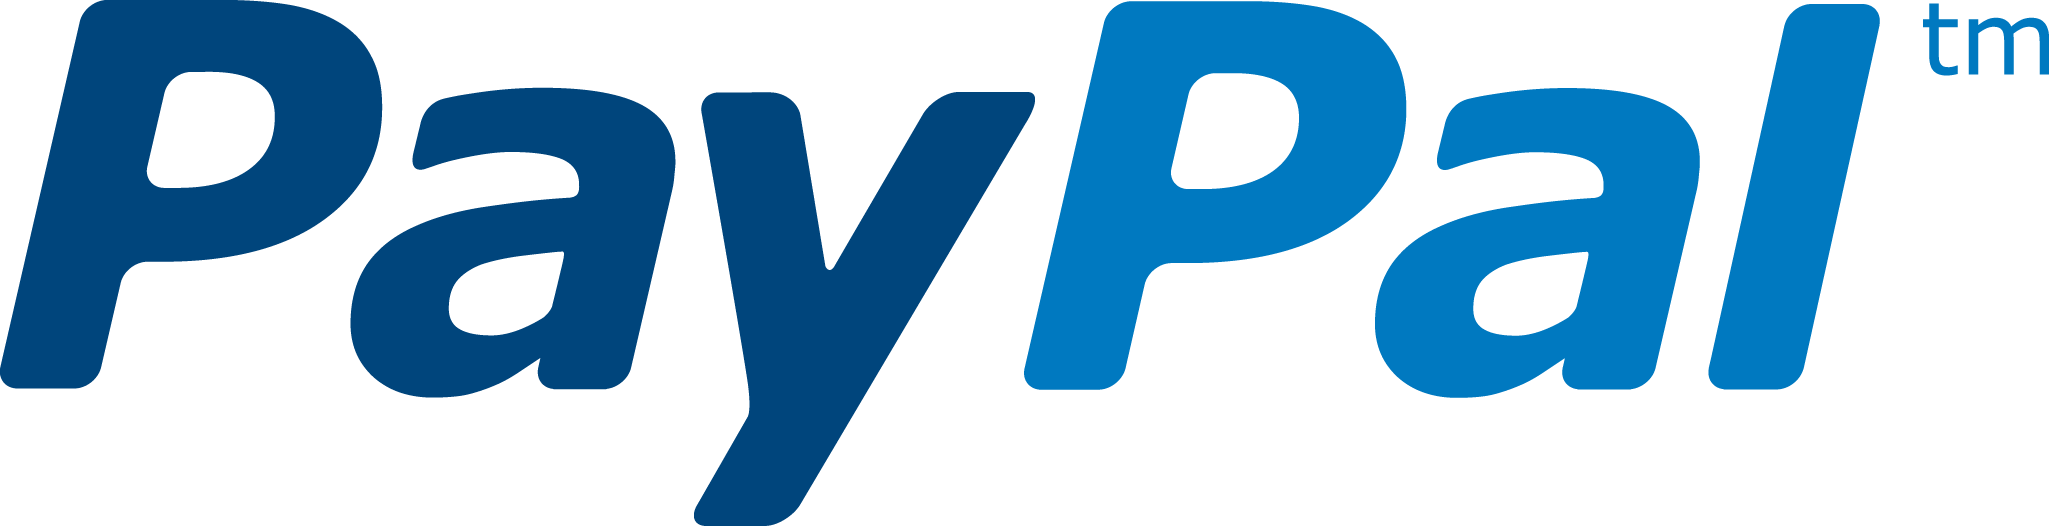 paypal logo png #2123